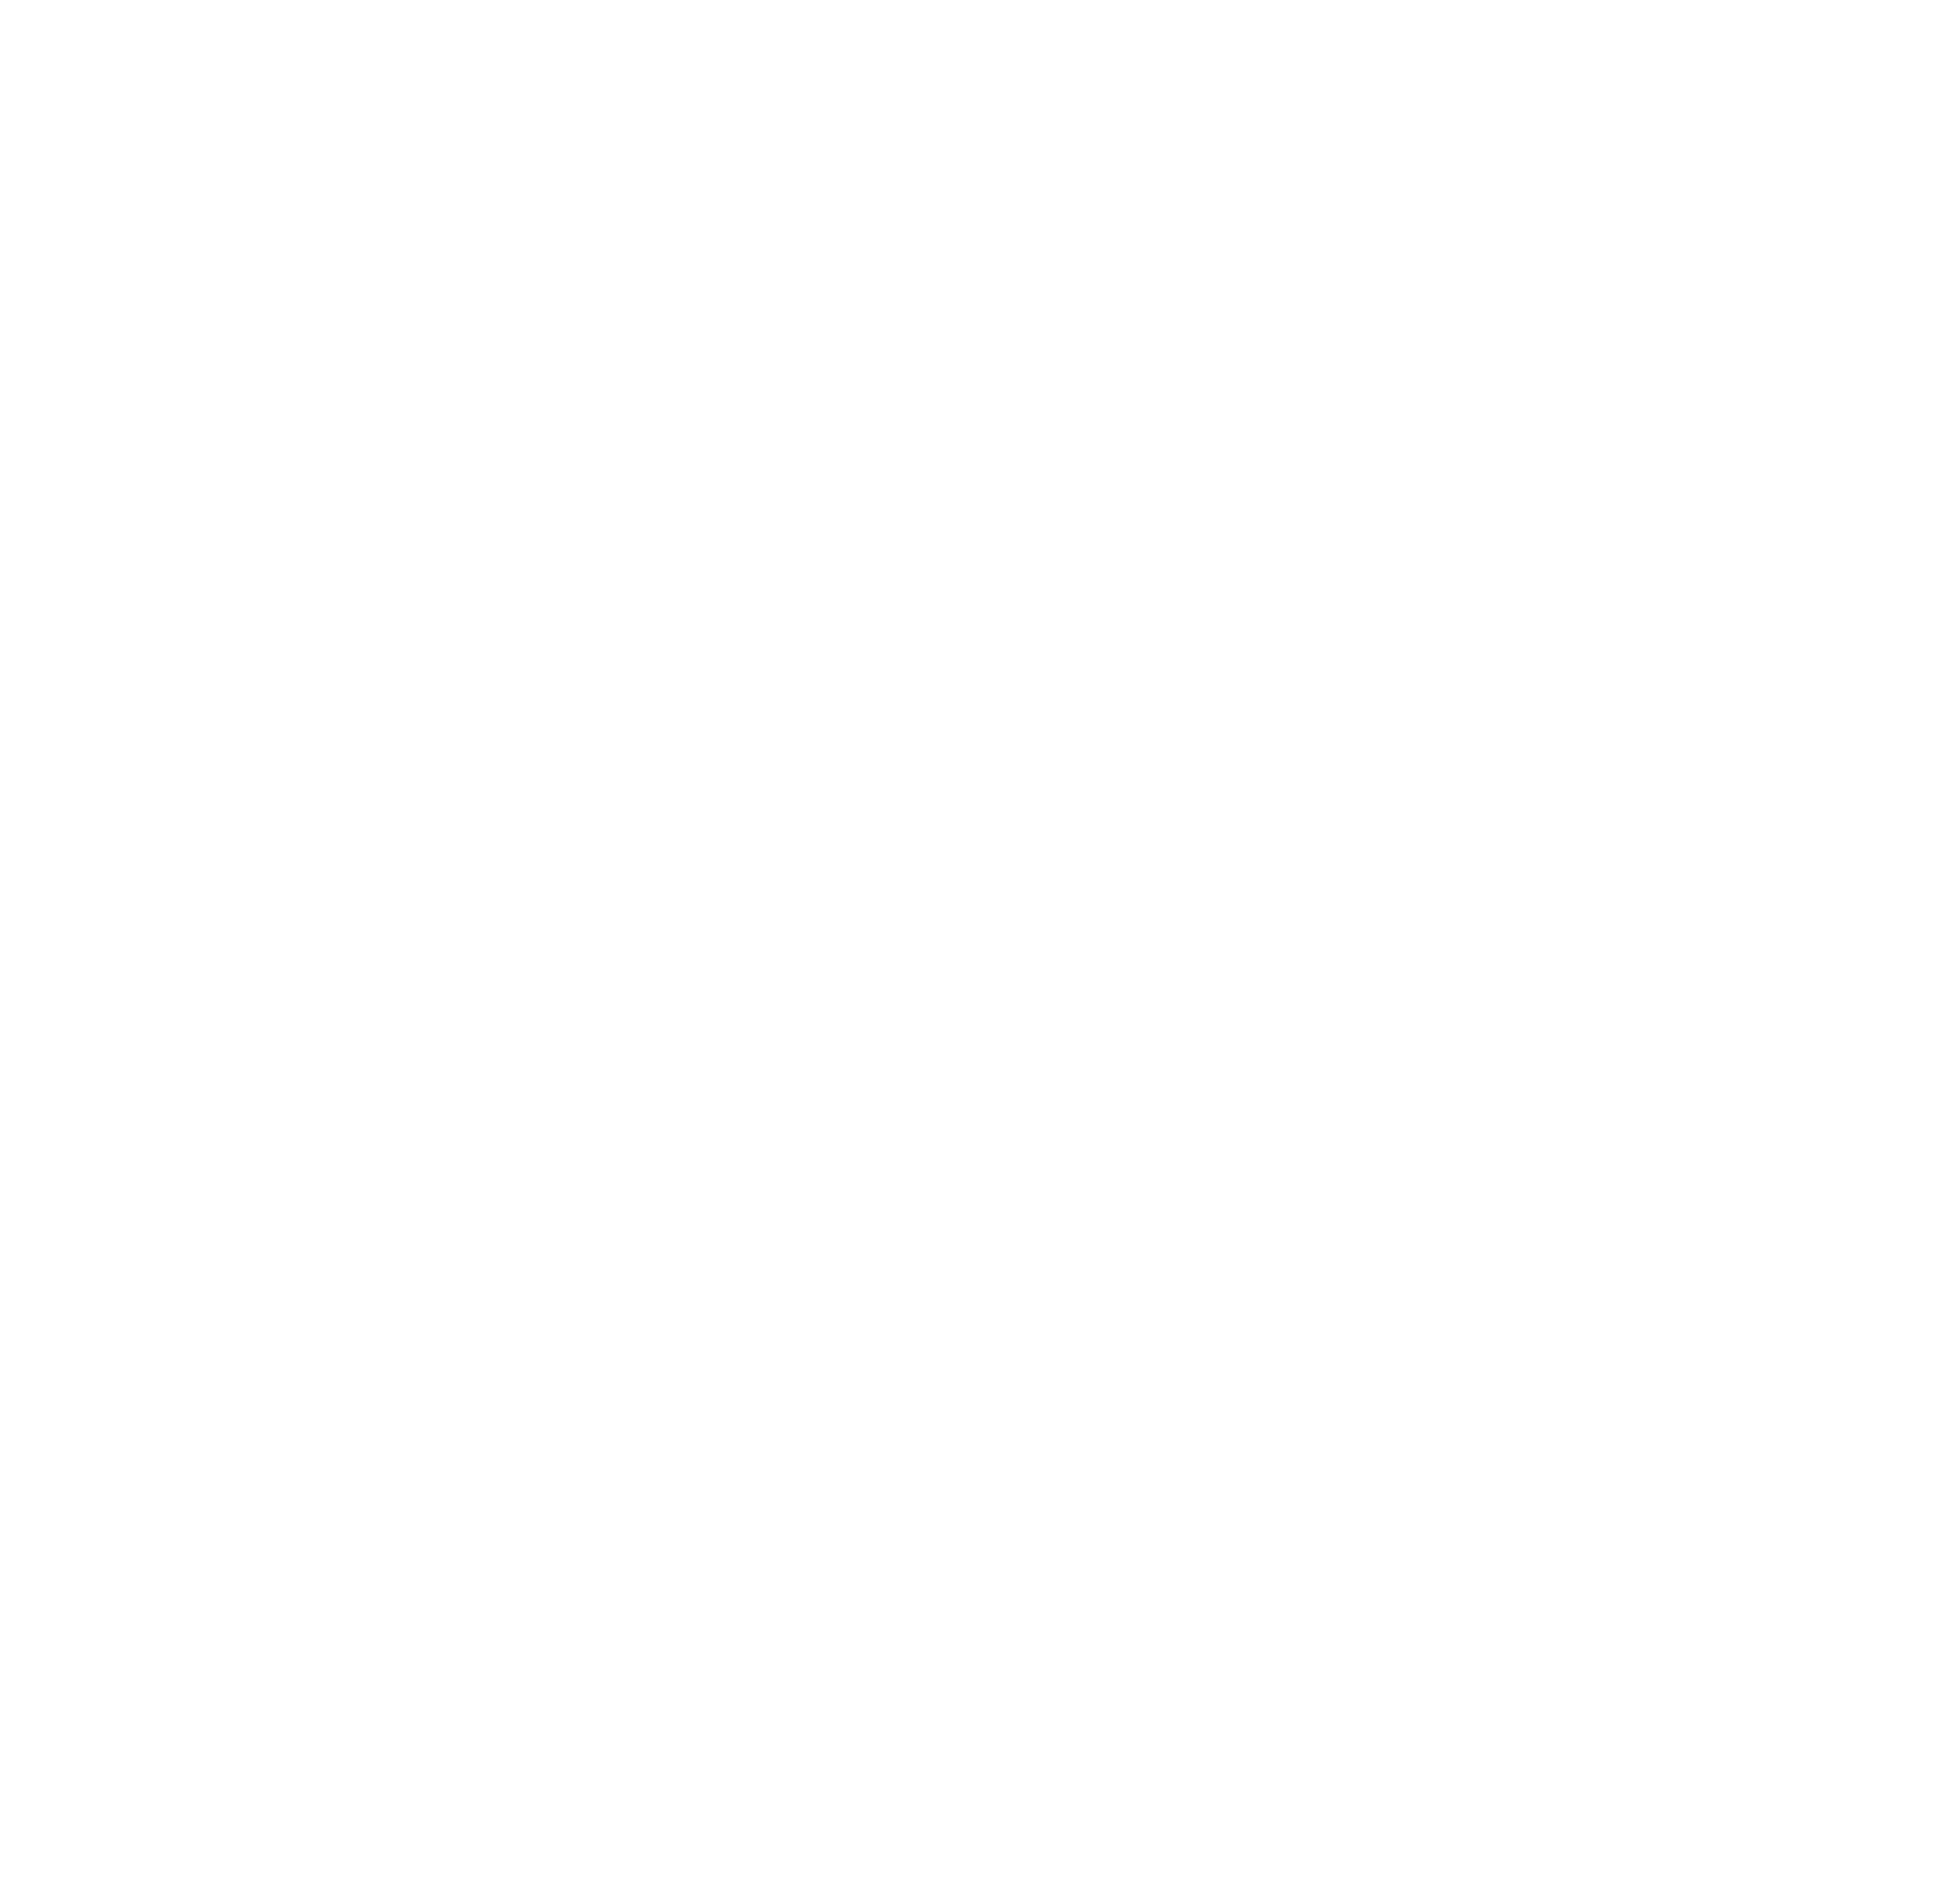 Air Gun Logo - About Us Devon Airgun Club